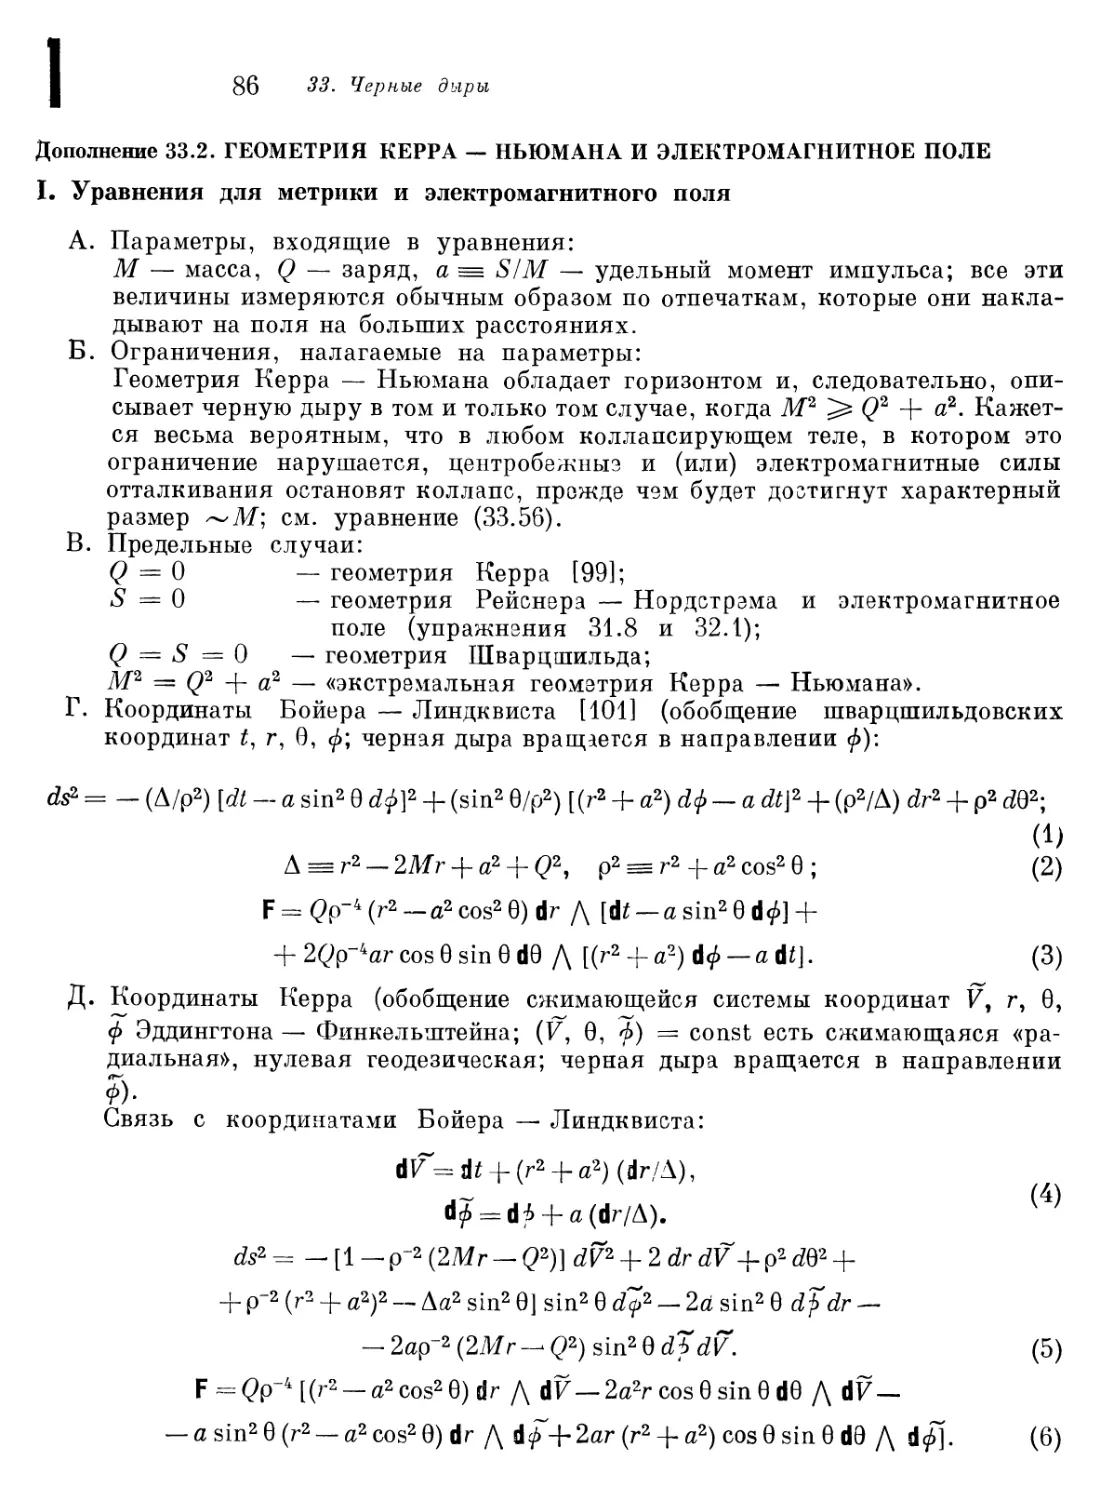 Дополнение 33.2. Геометрия Керра-Ньюмана и электромагнитное поле